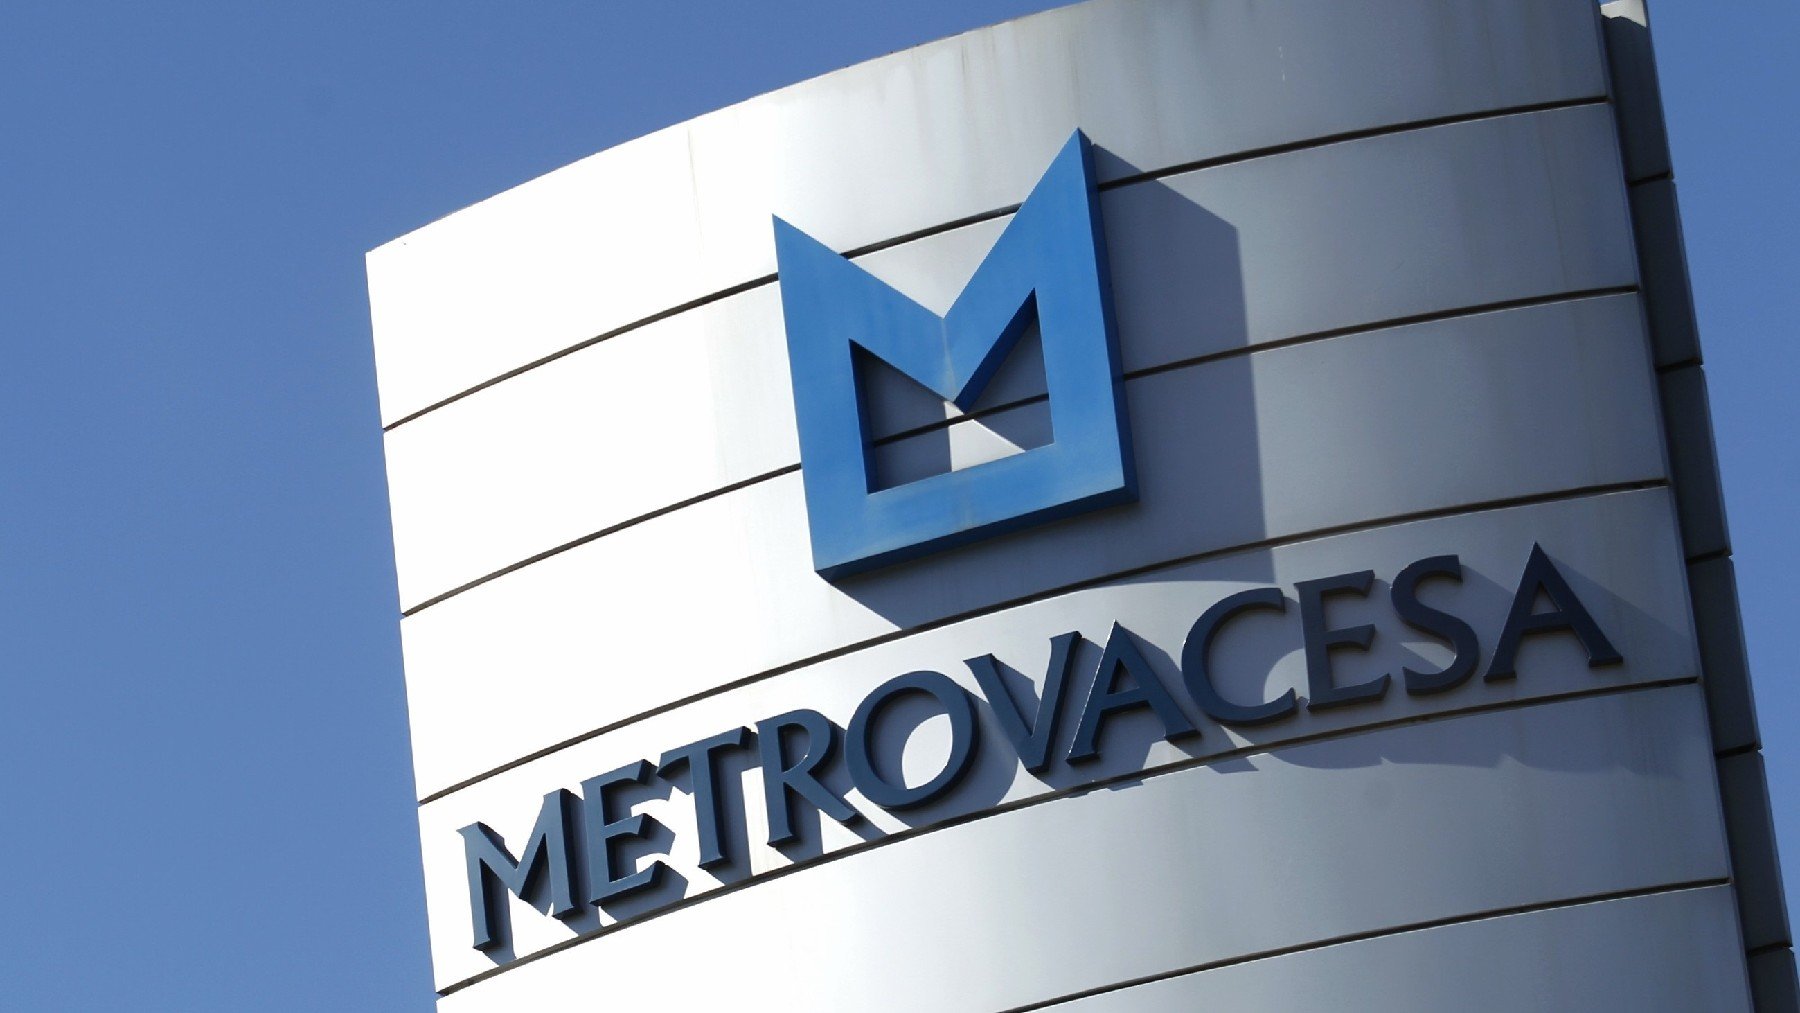 Il primo sviluppatore immobiliare spagnolo è entrato nel metaverso - Metrovacesa agrees with eleven entities to refinance its corporate loan